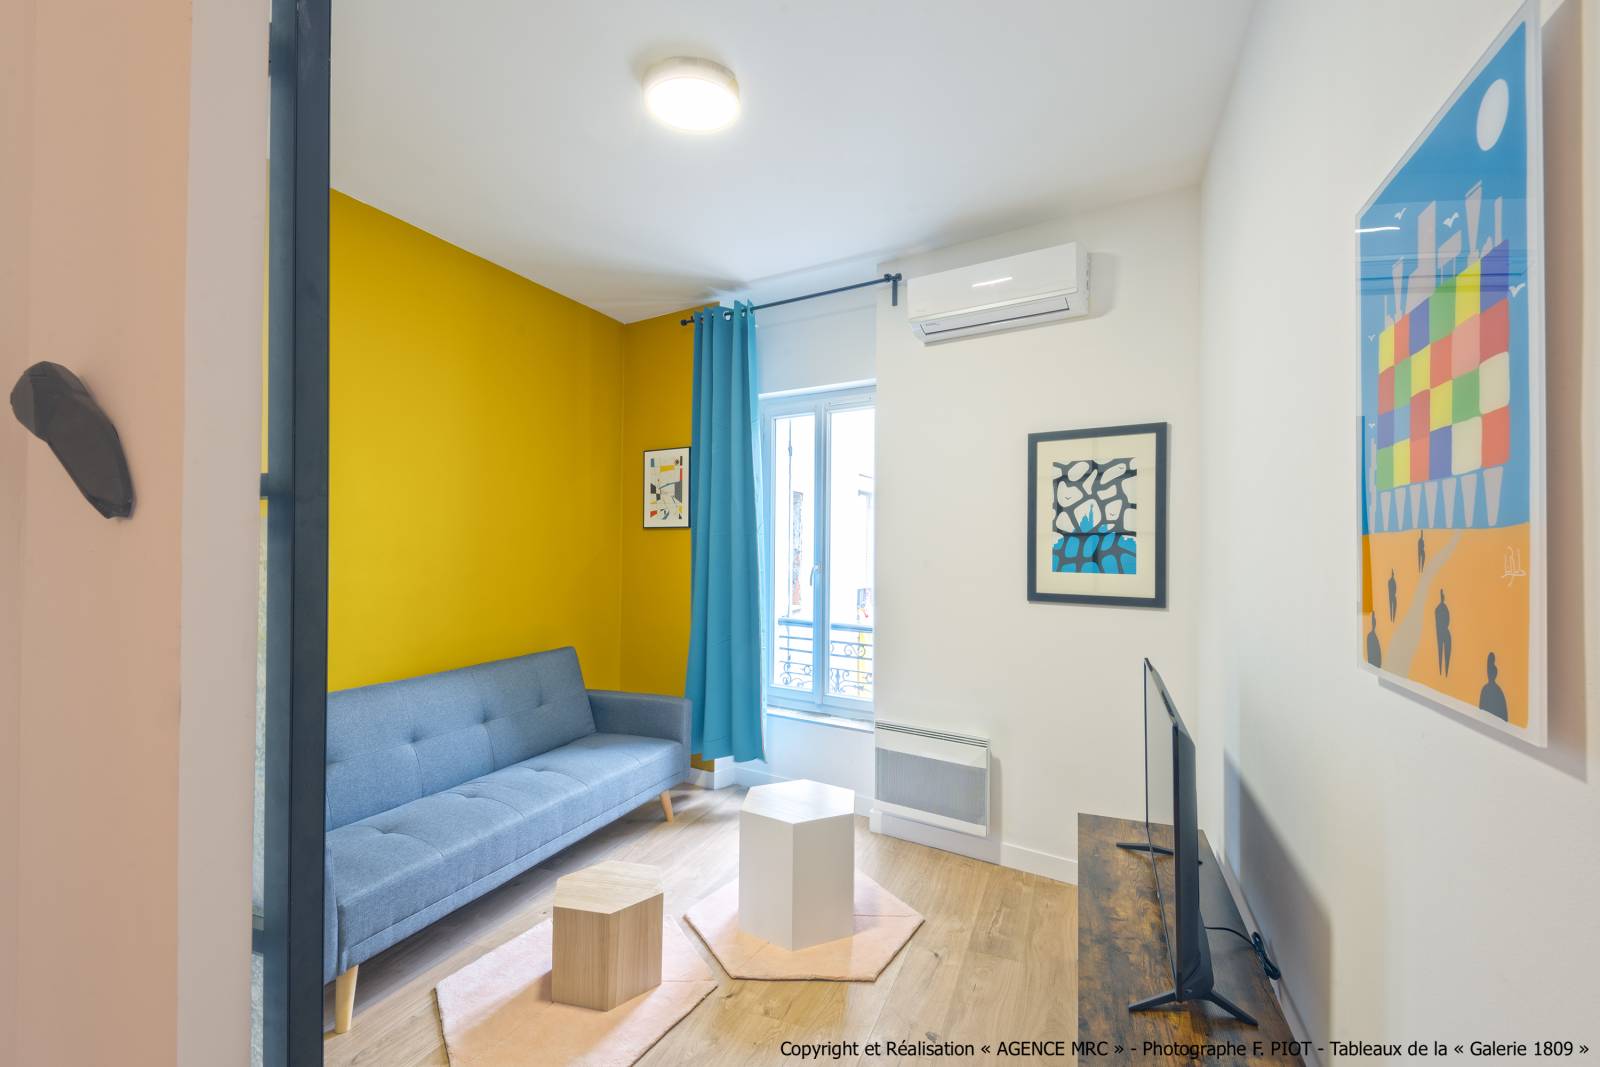 Faire décorer son appartement pas un architecte d'intérieur décorateur à Marseille 13